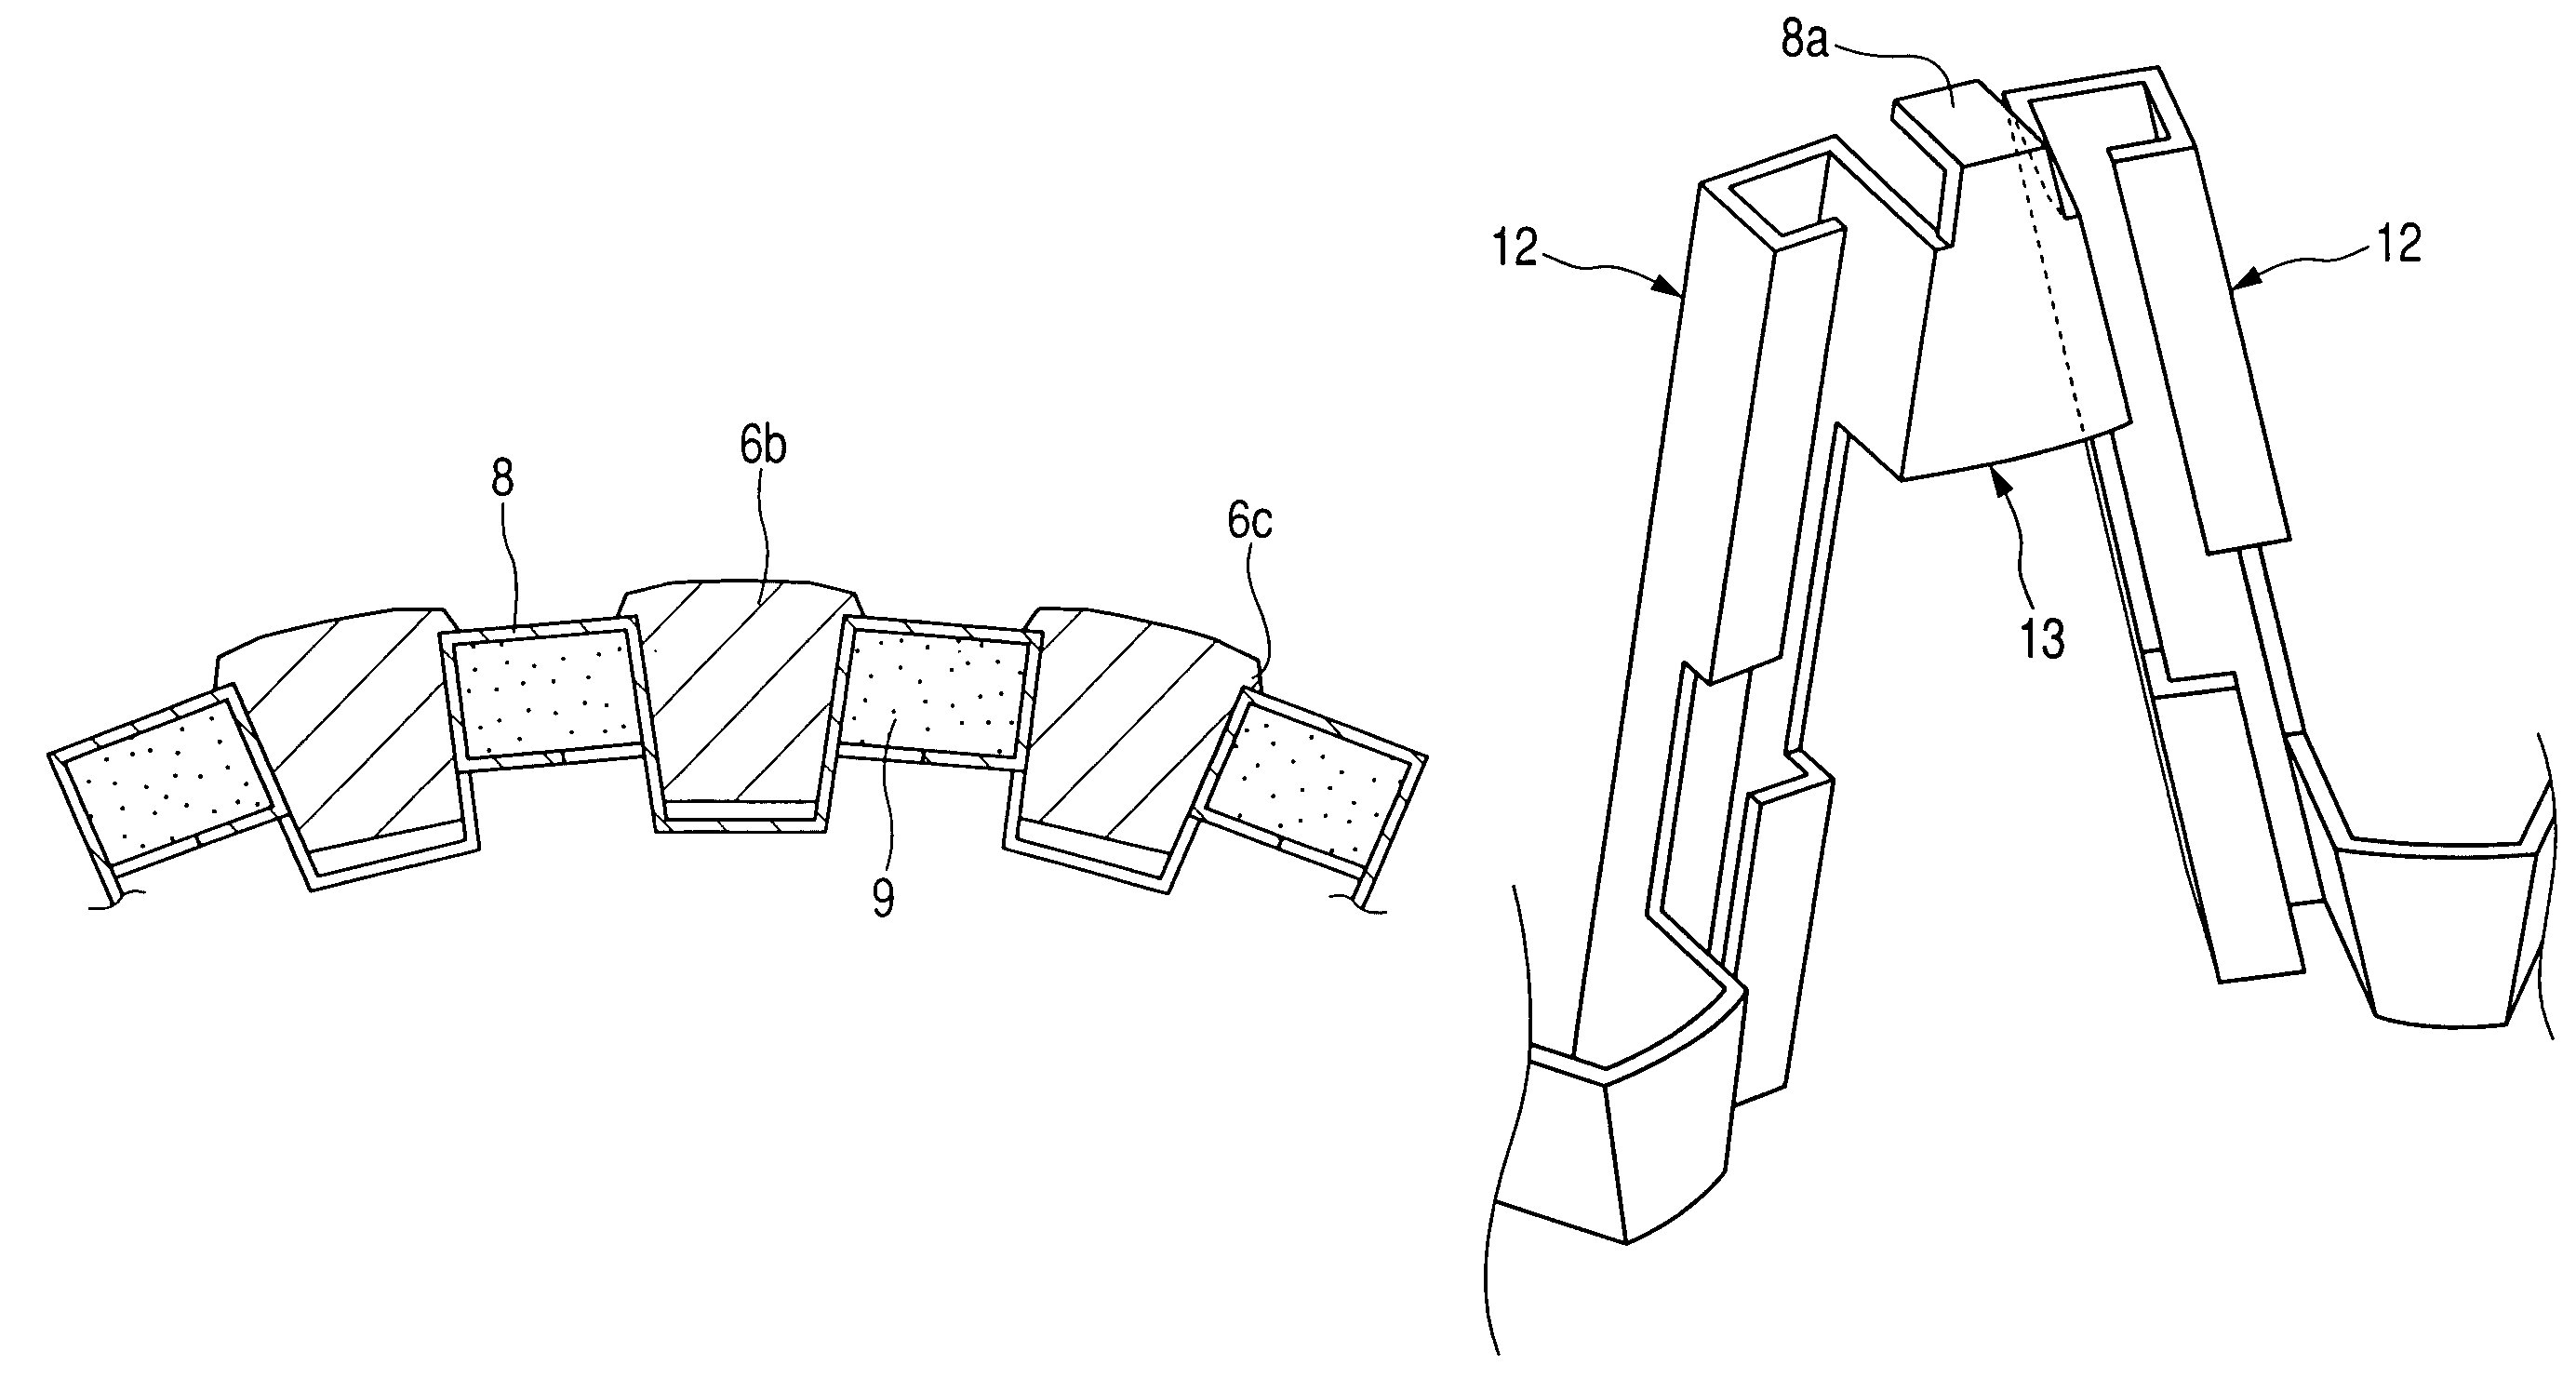 Rotor for automotive alternator having improved magnet holder